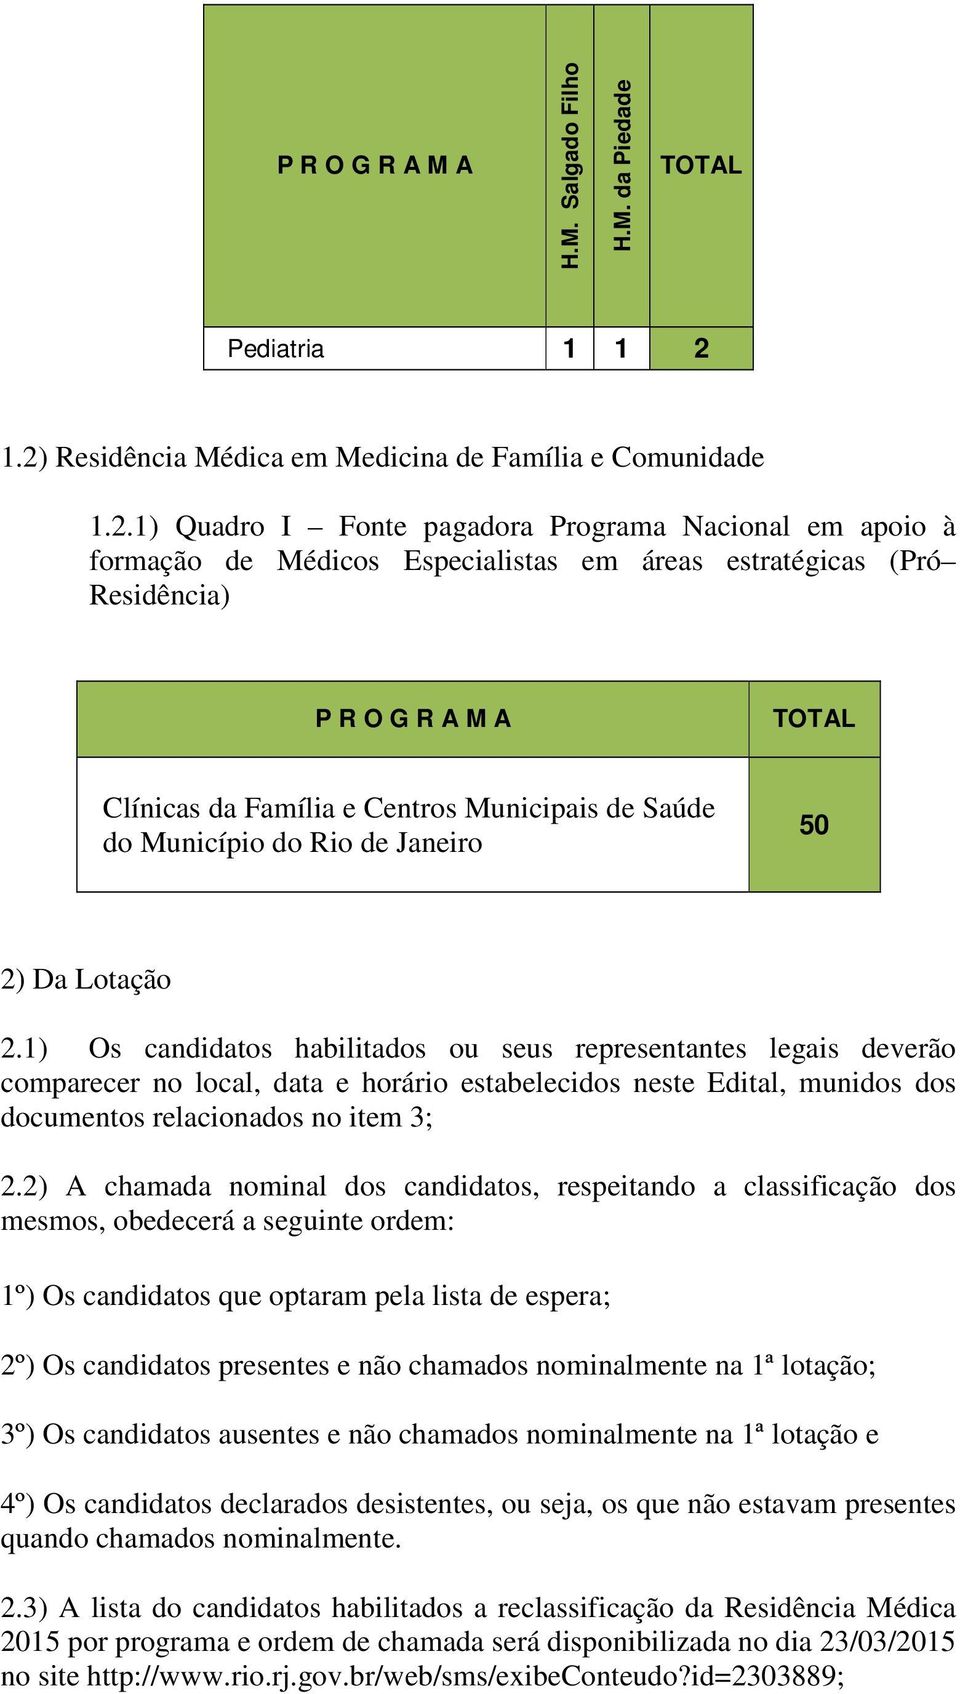 R A M A TOTAL Clínicas da Família e Centros Municipais de Saúde do Município do Rio de Janeiro 50 2) Da Lotação 2.